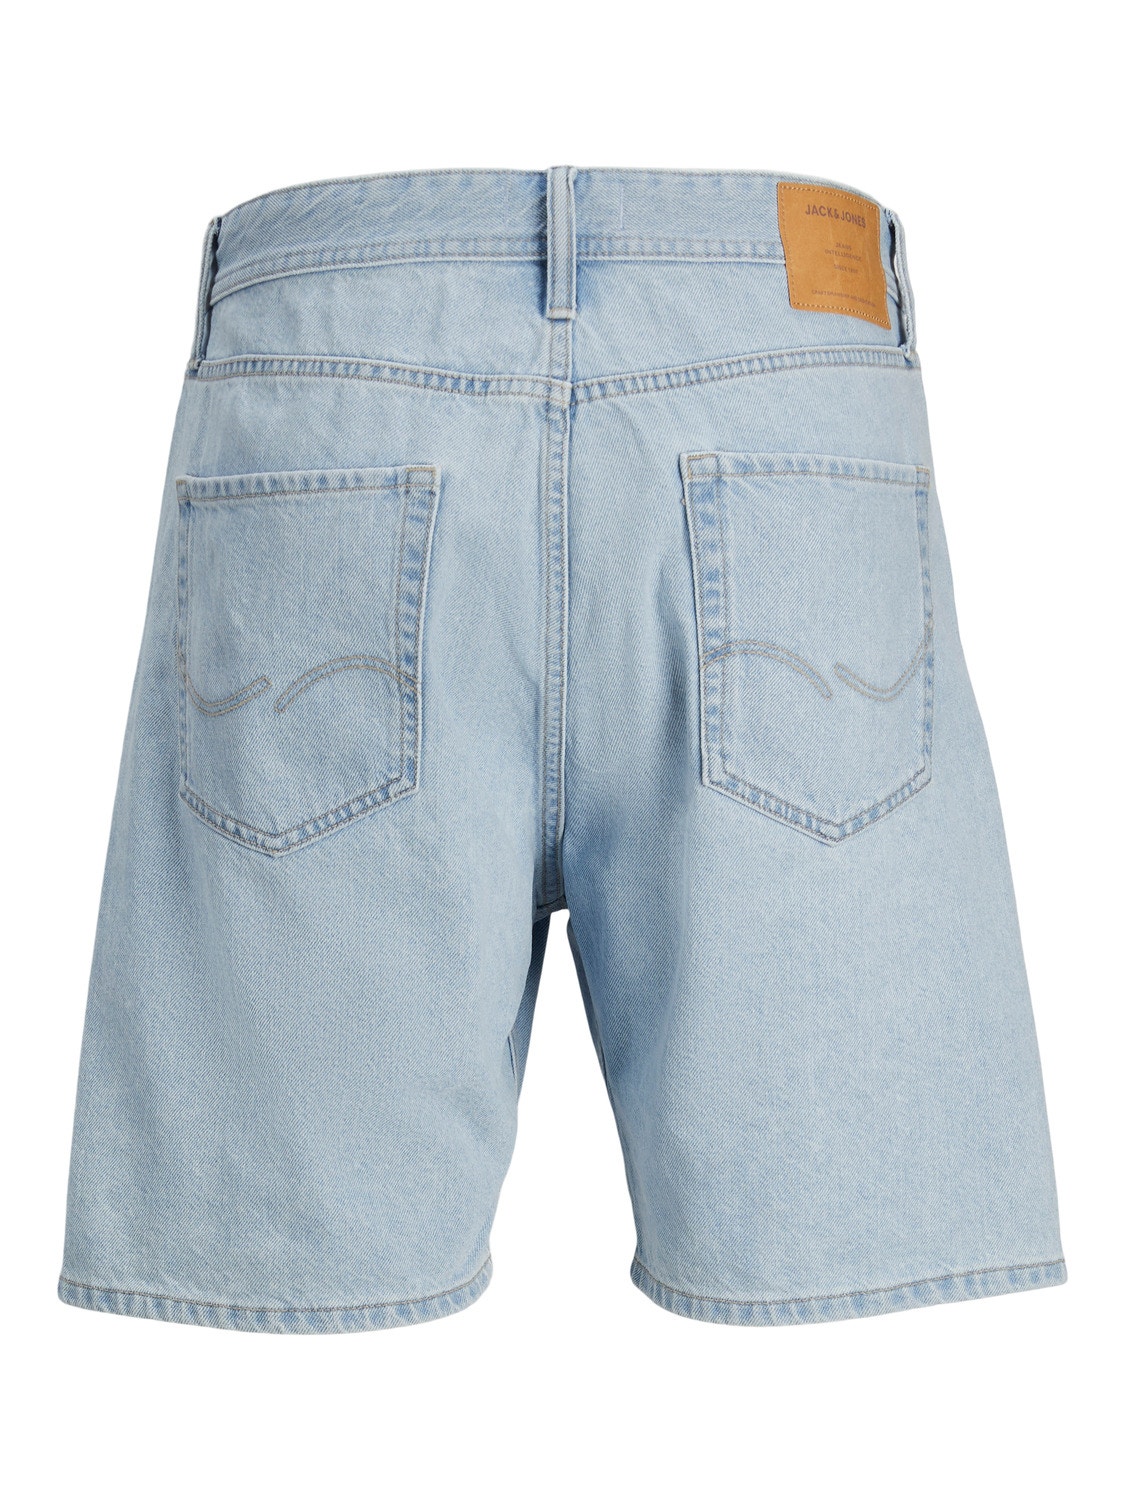 Jack & Jones Plus Size Loose Fit Shorts casuales -Blue Denim - 12257456